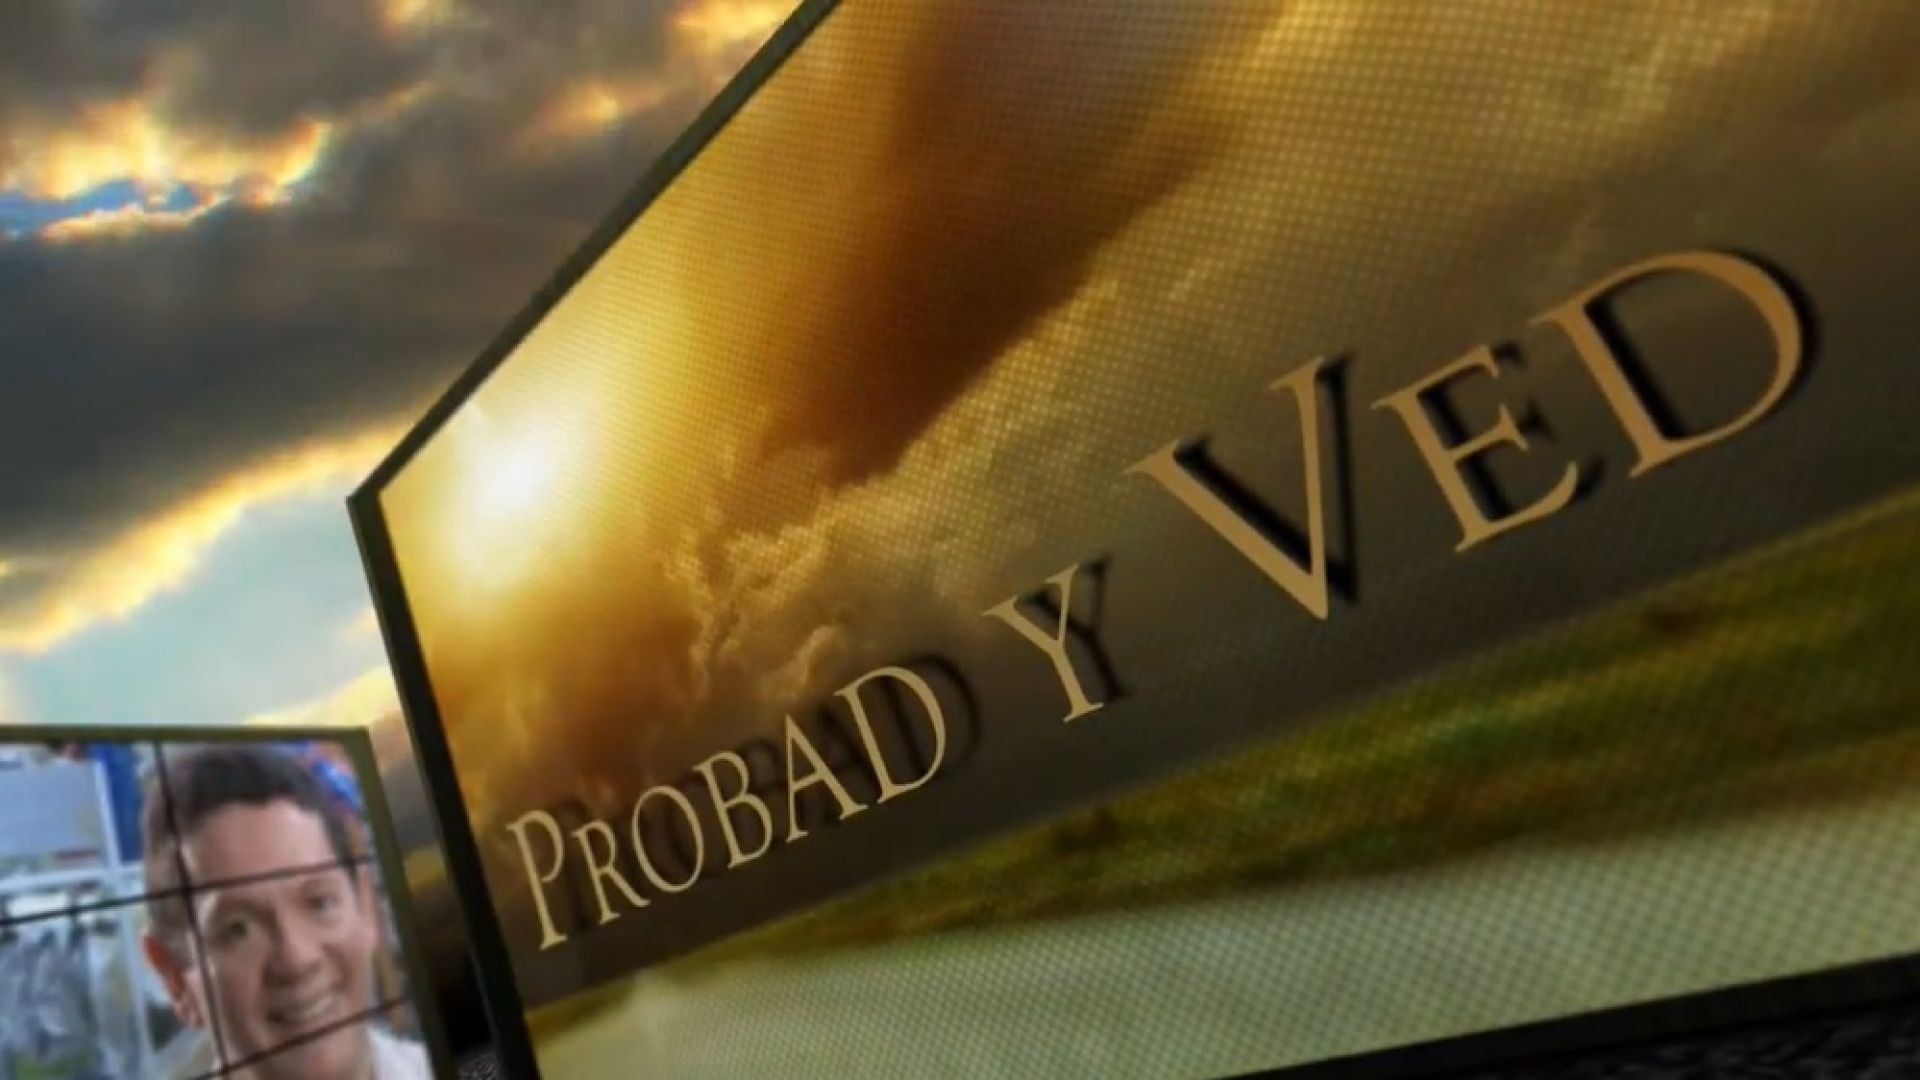 Probad y Ved 2013 - Gratitud en Sonido - 29/Jun